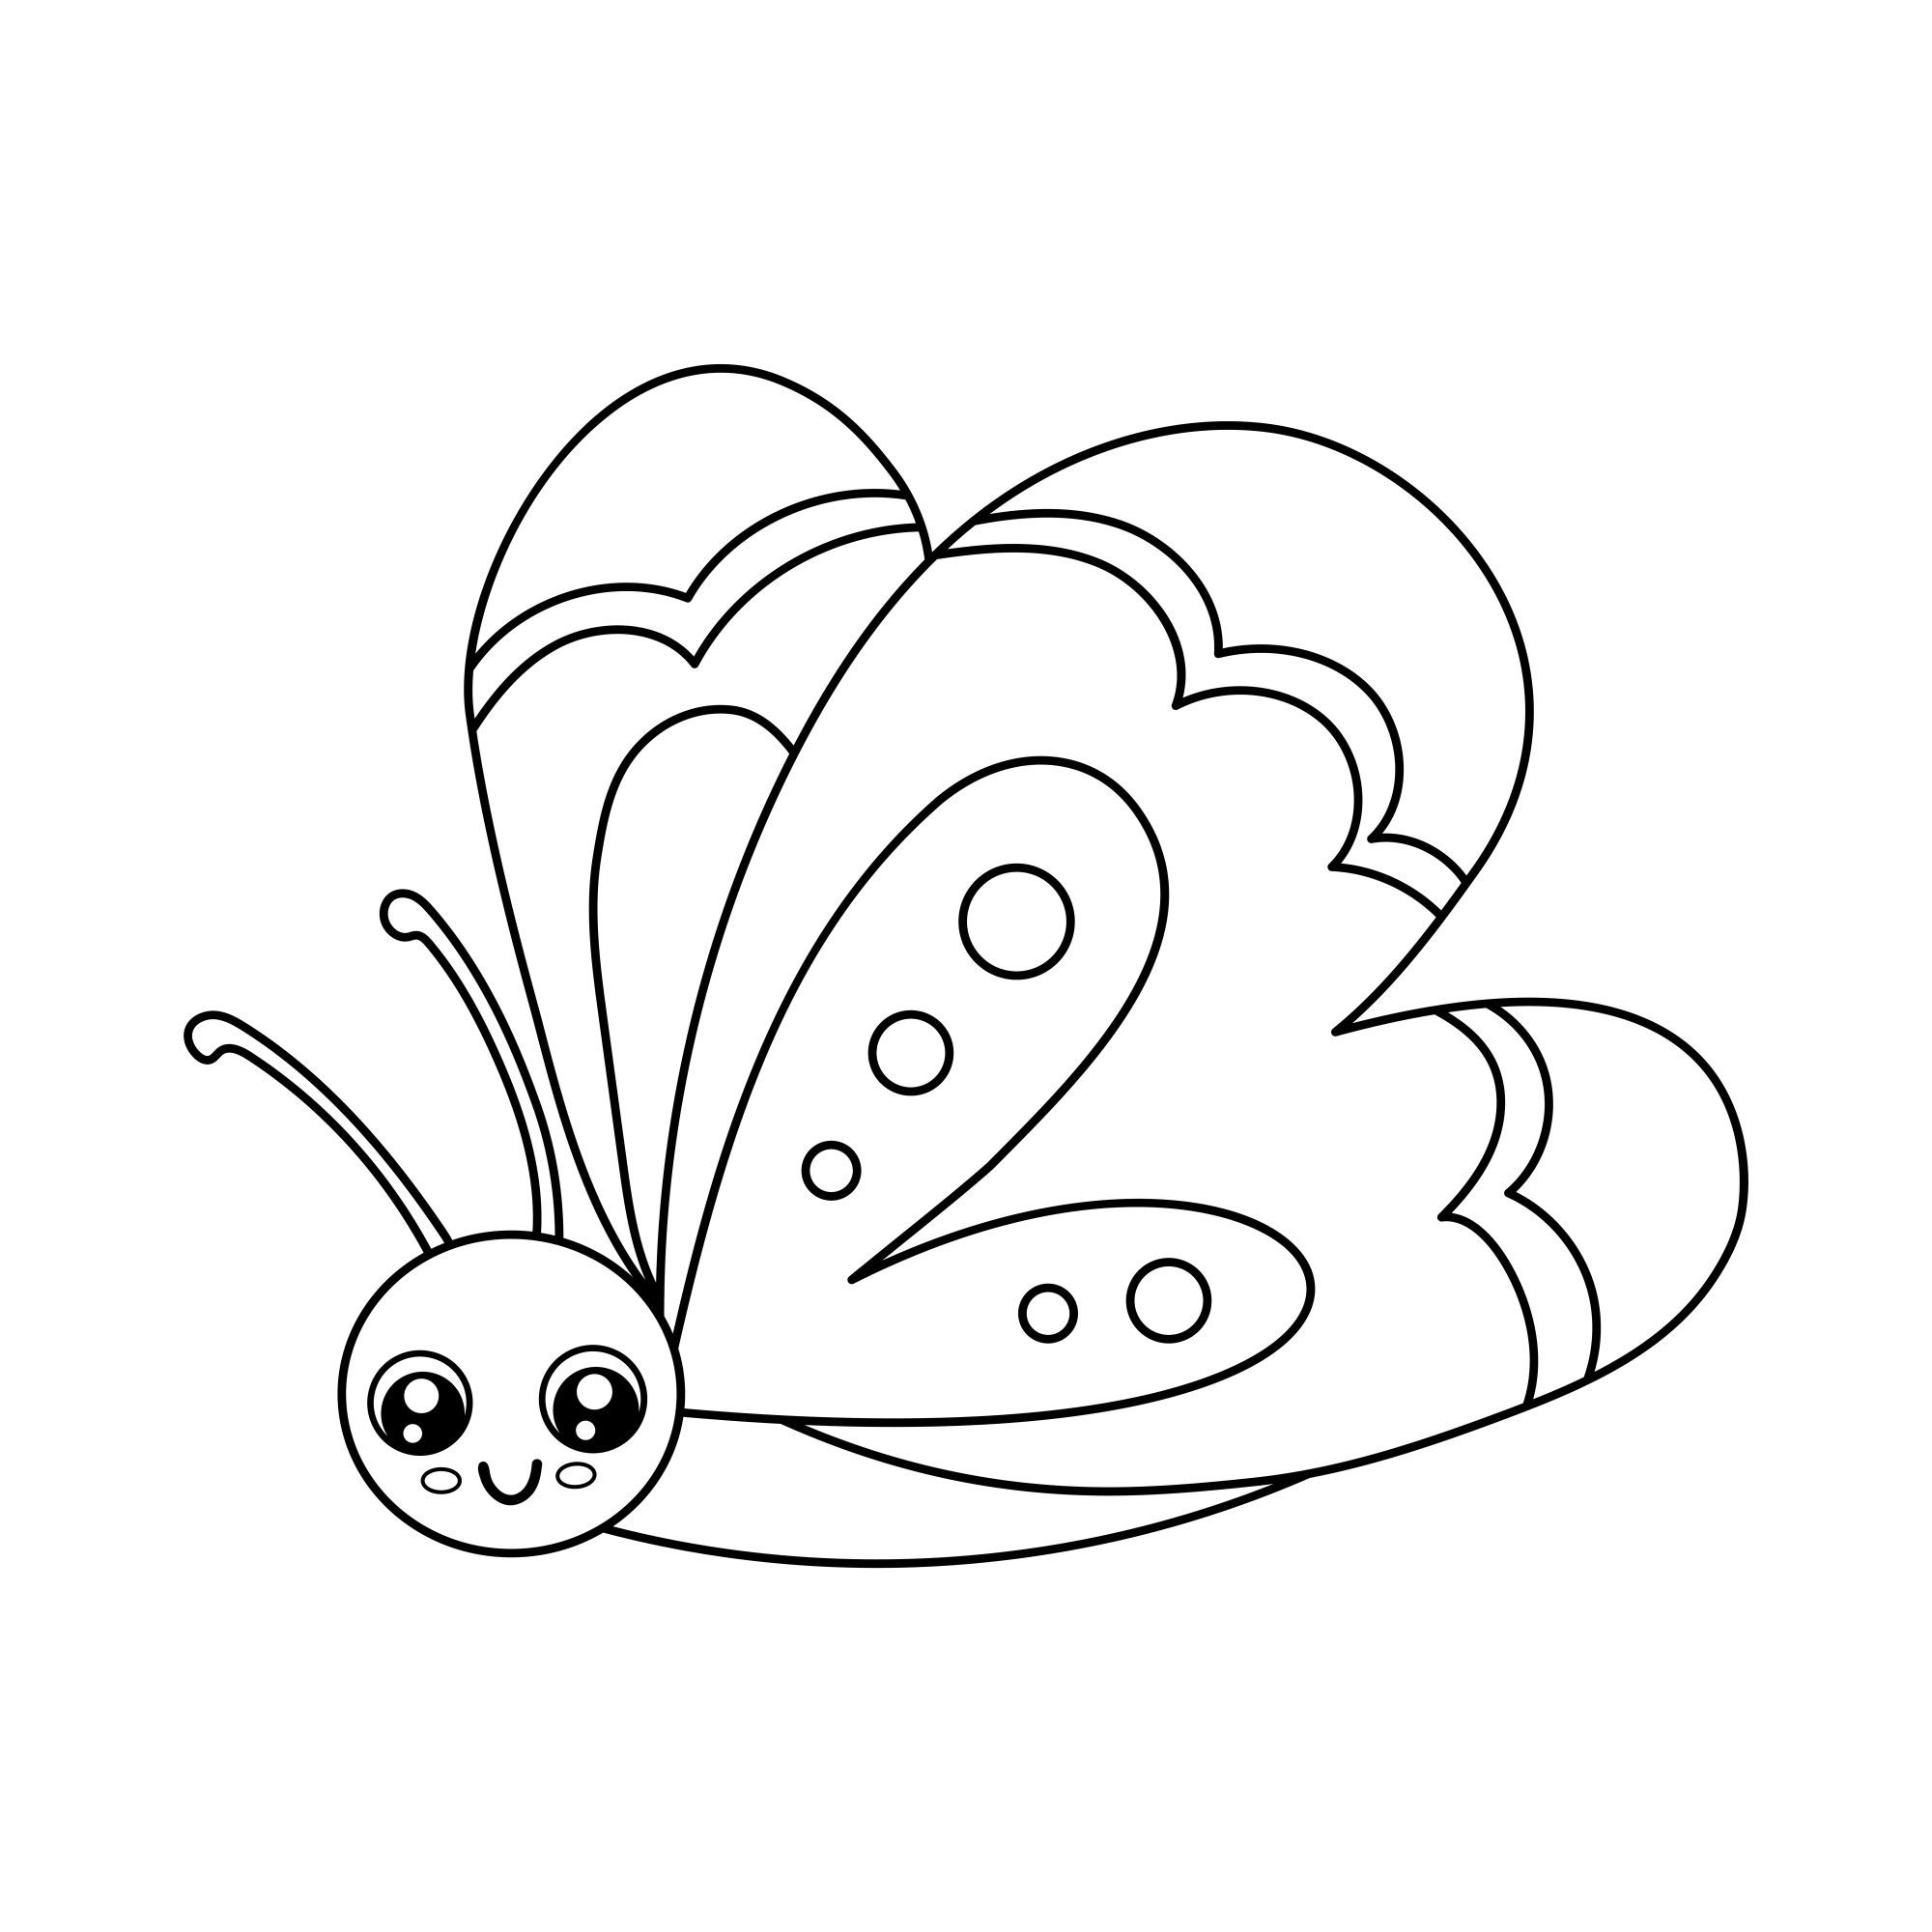 Раскраска для детей: смешная бабочка малыш с круглой головой